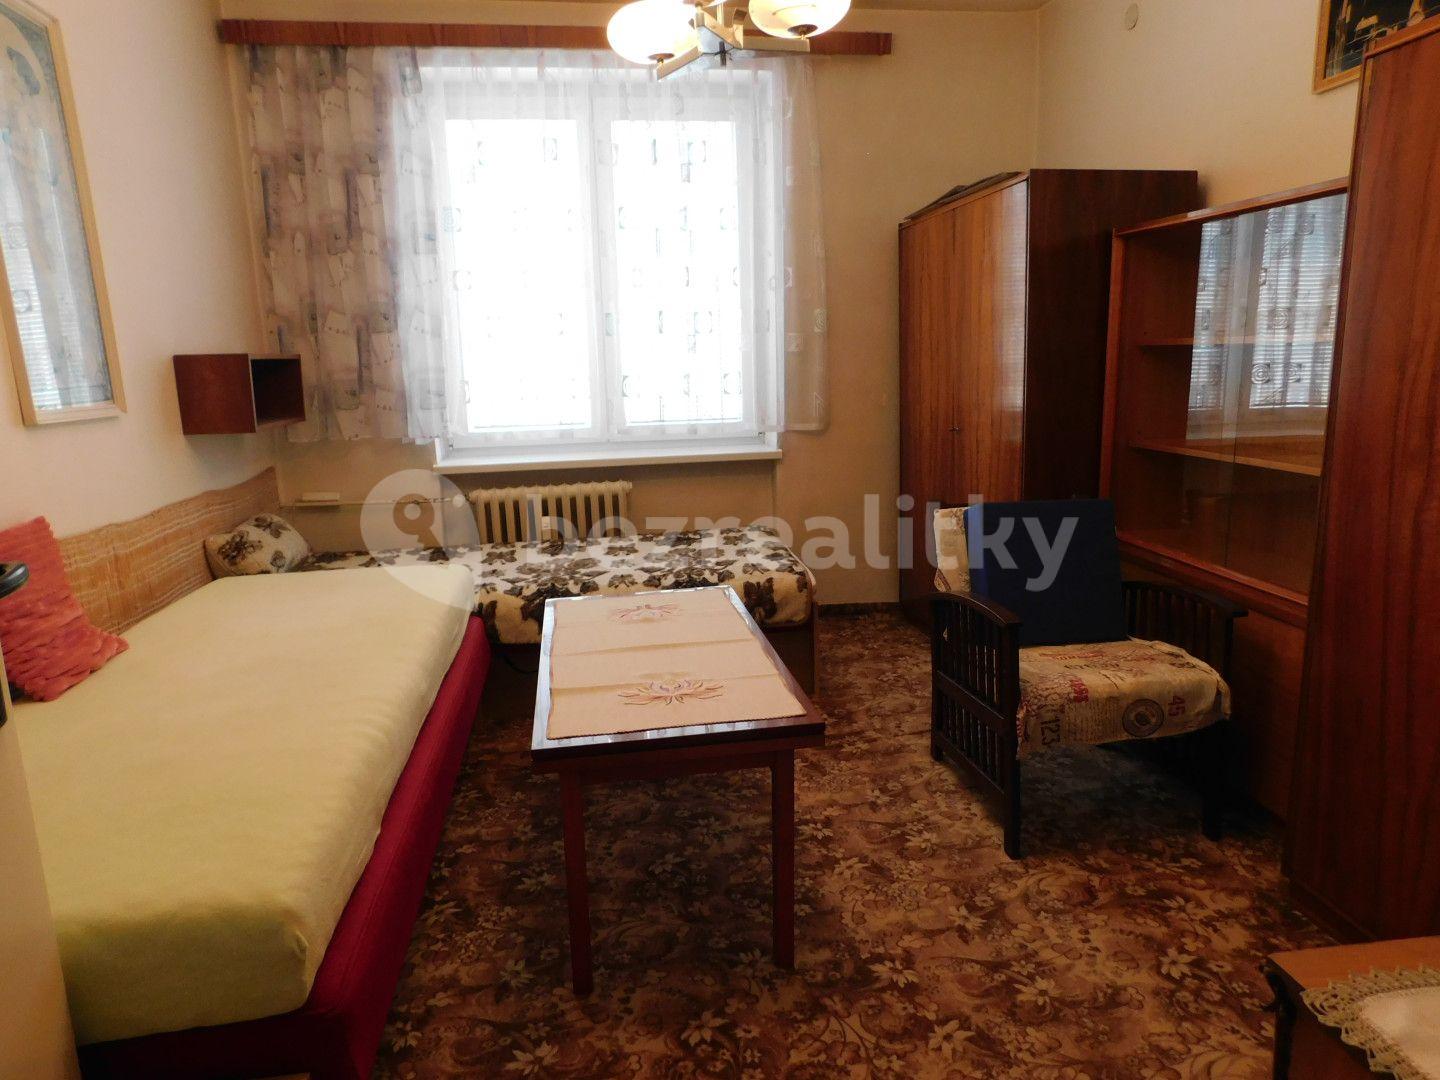 2 bedroom flat for sale, 55 m², Smetanova, Blansko, Jihomoravský Region